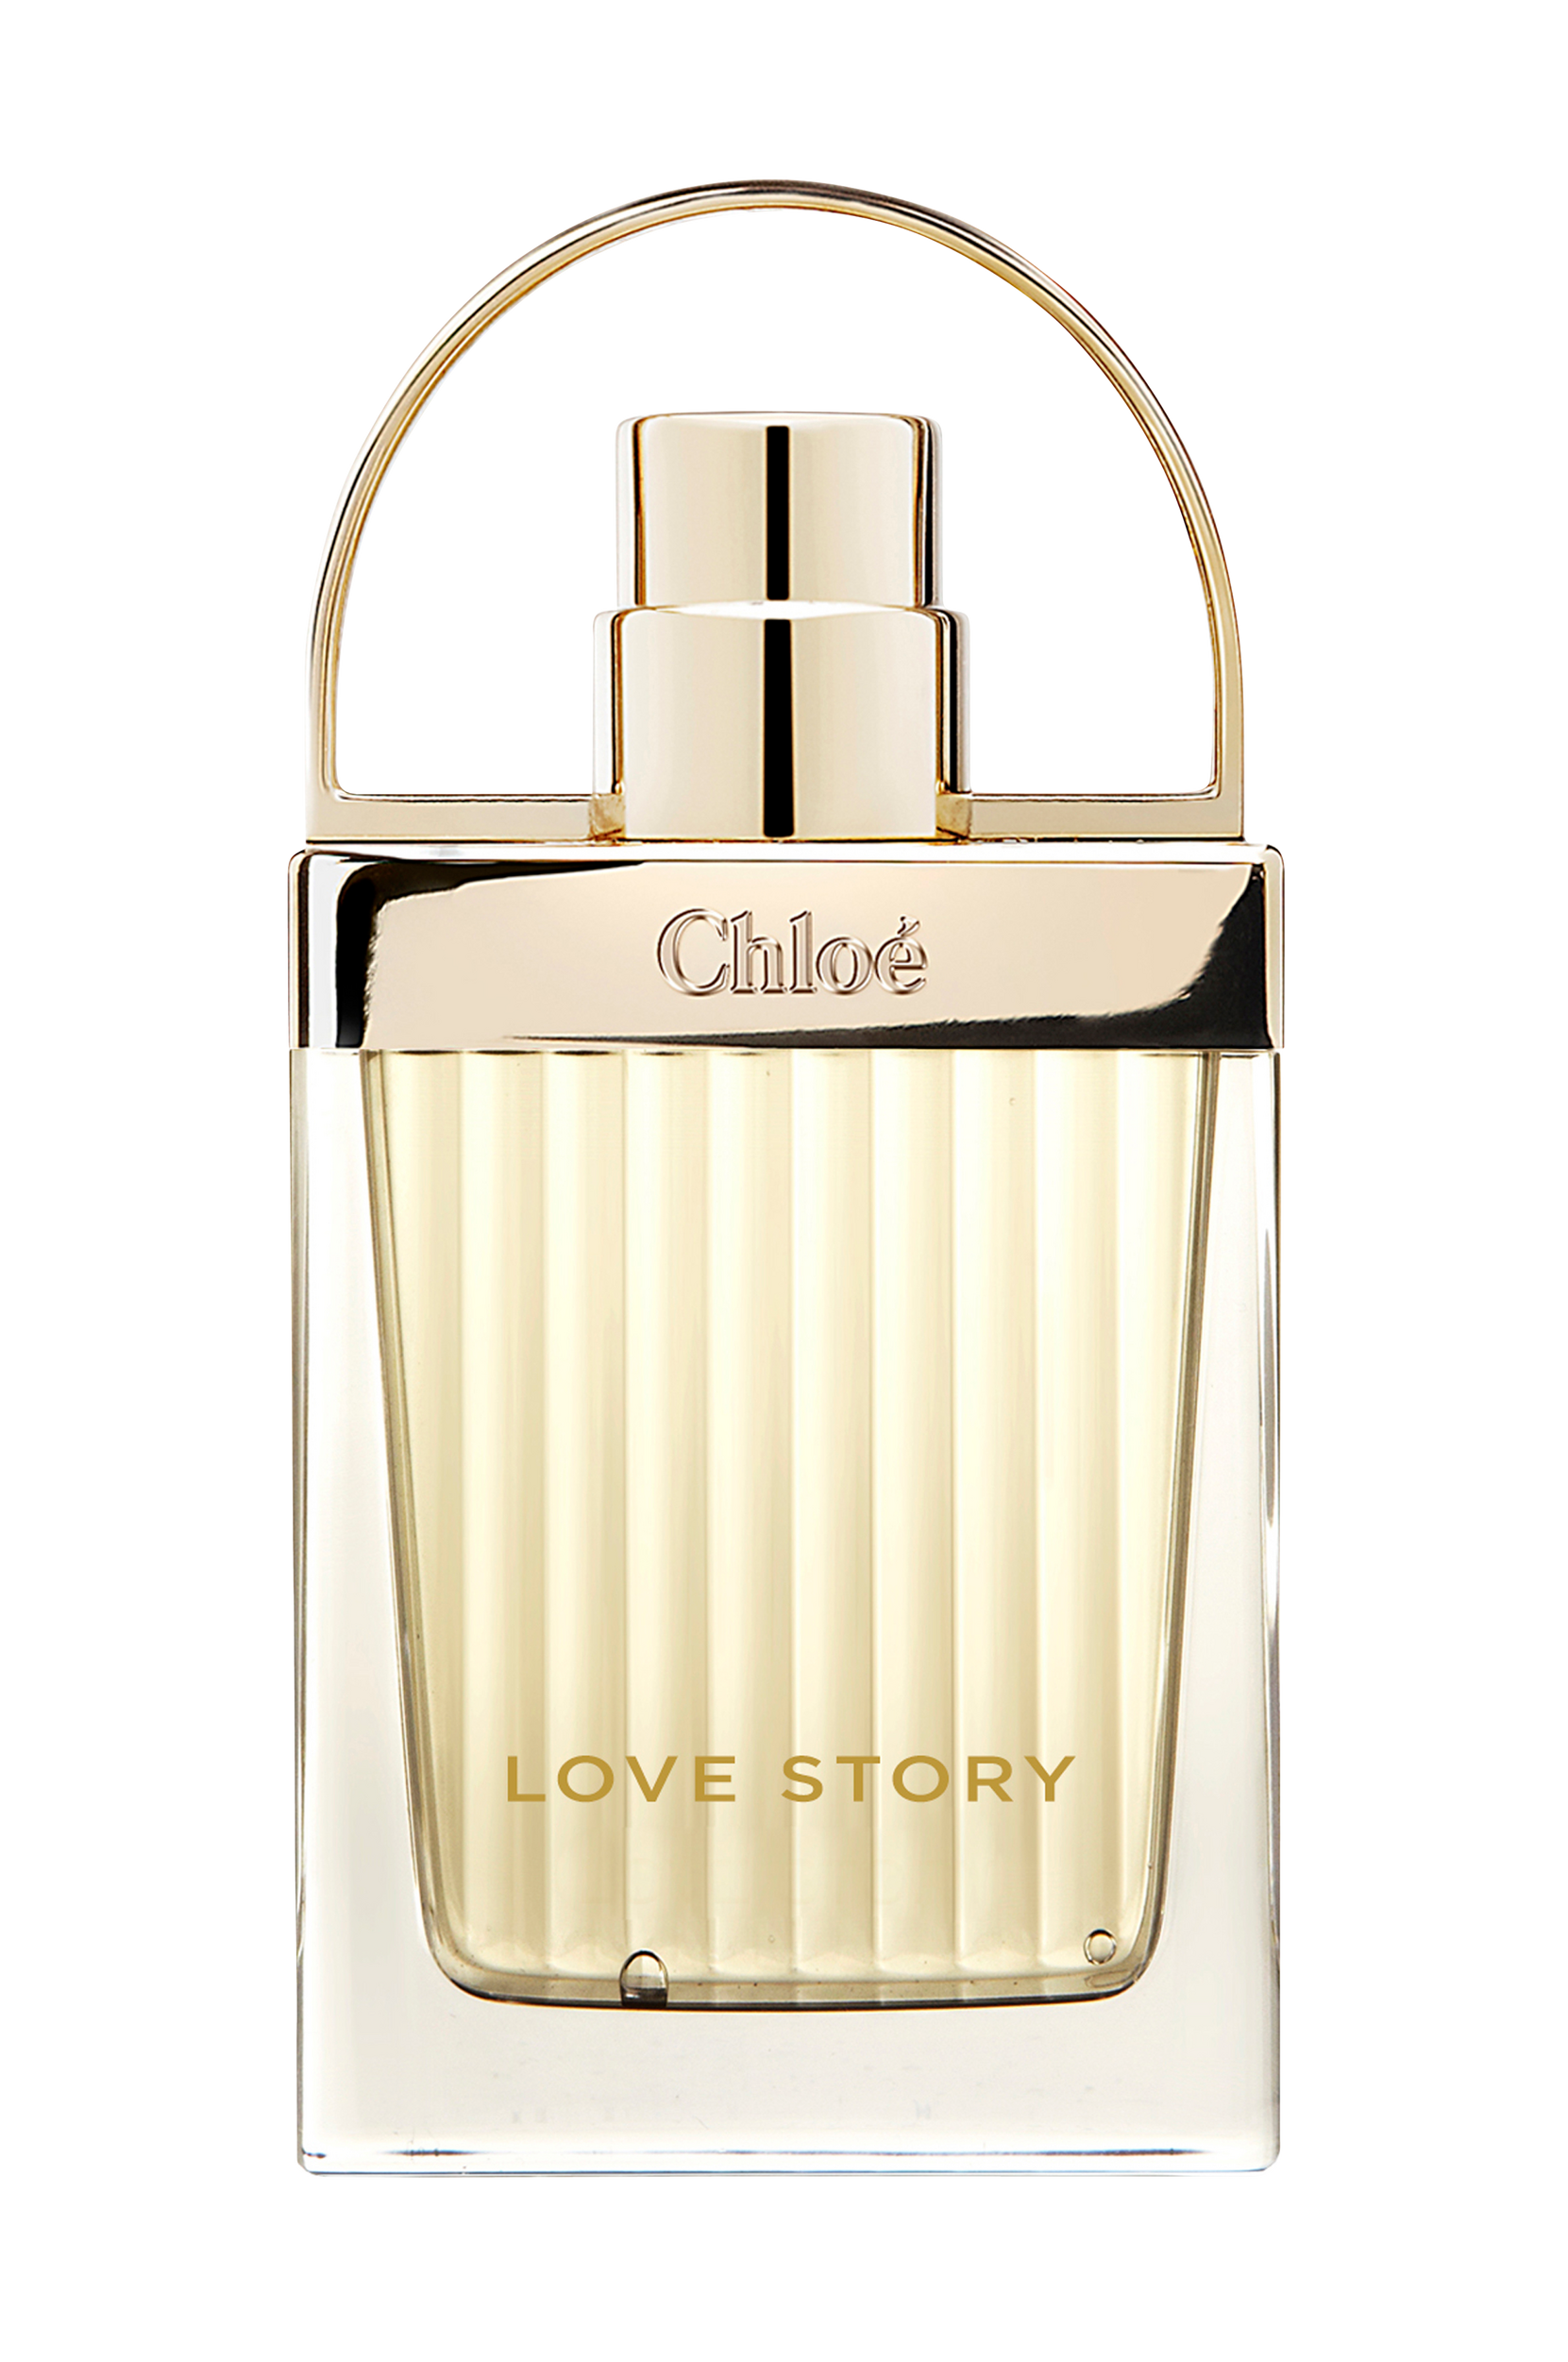 Love Story Eau de parfum 20 ml, Chloé